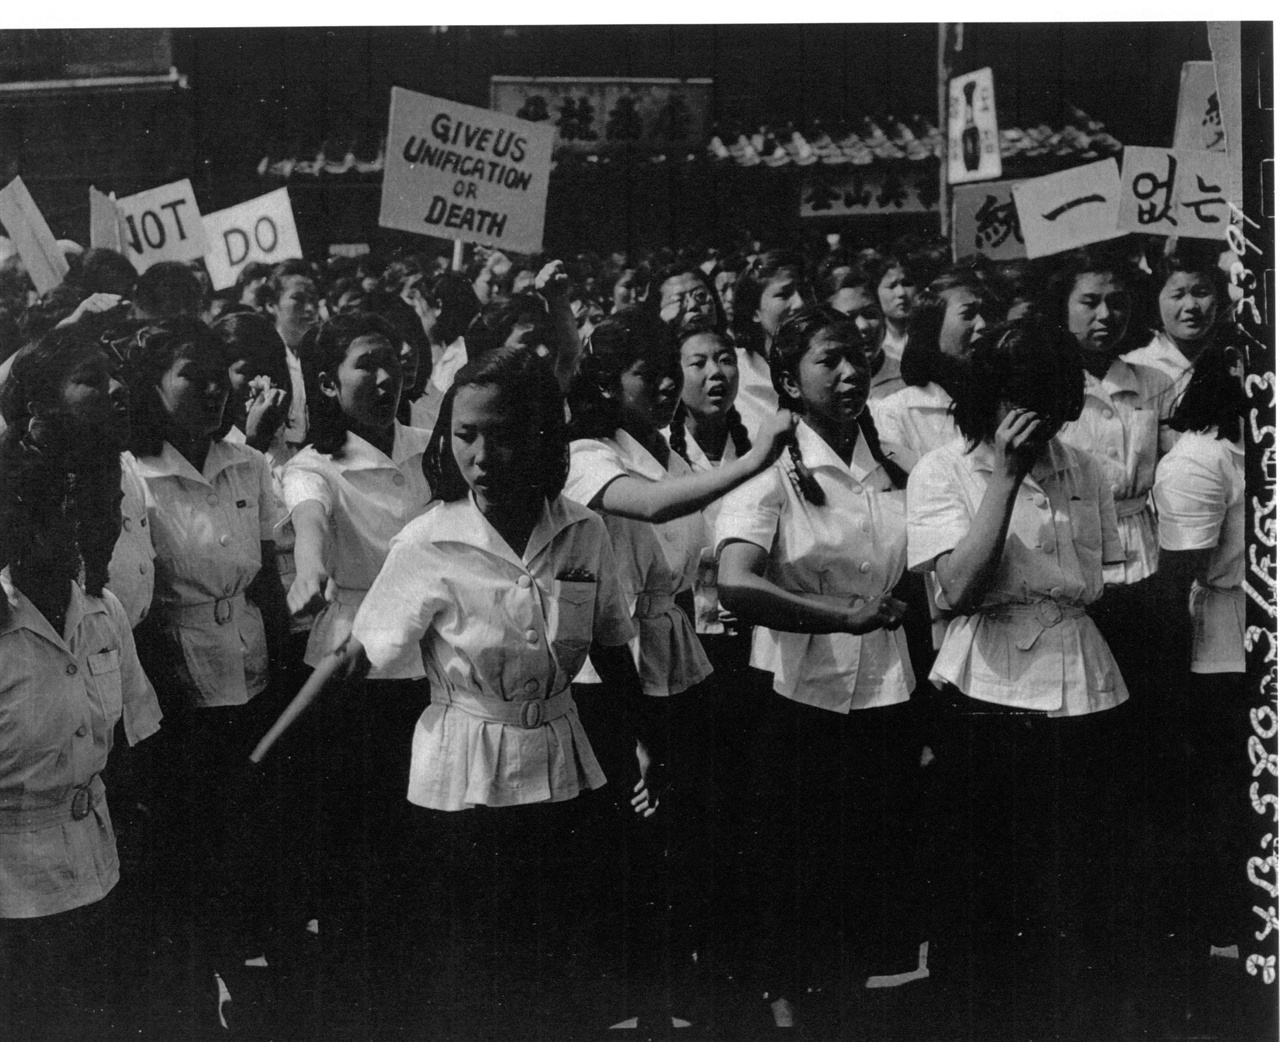  1953. 6. 11. 부산, 학생들이 정전회담 반대 시위를 하고 있다. 